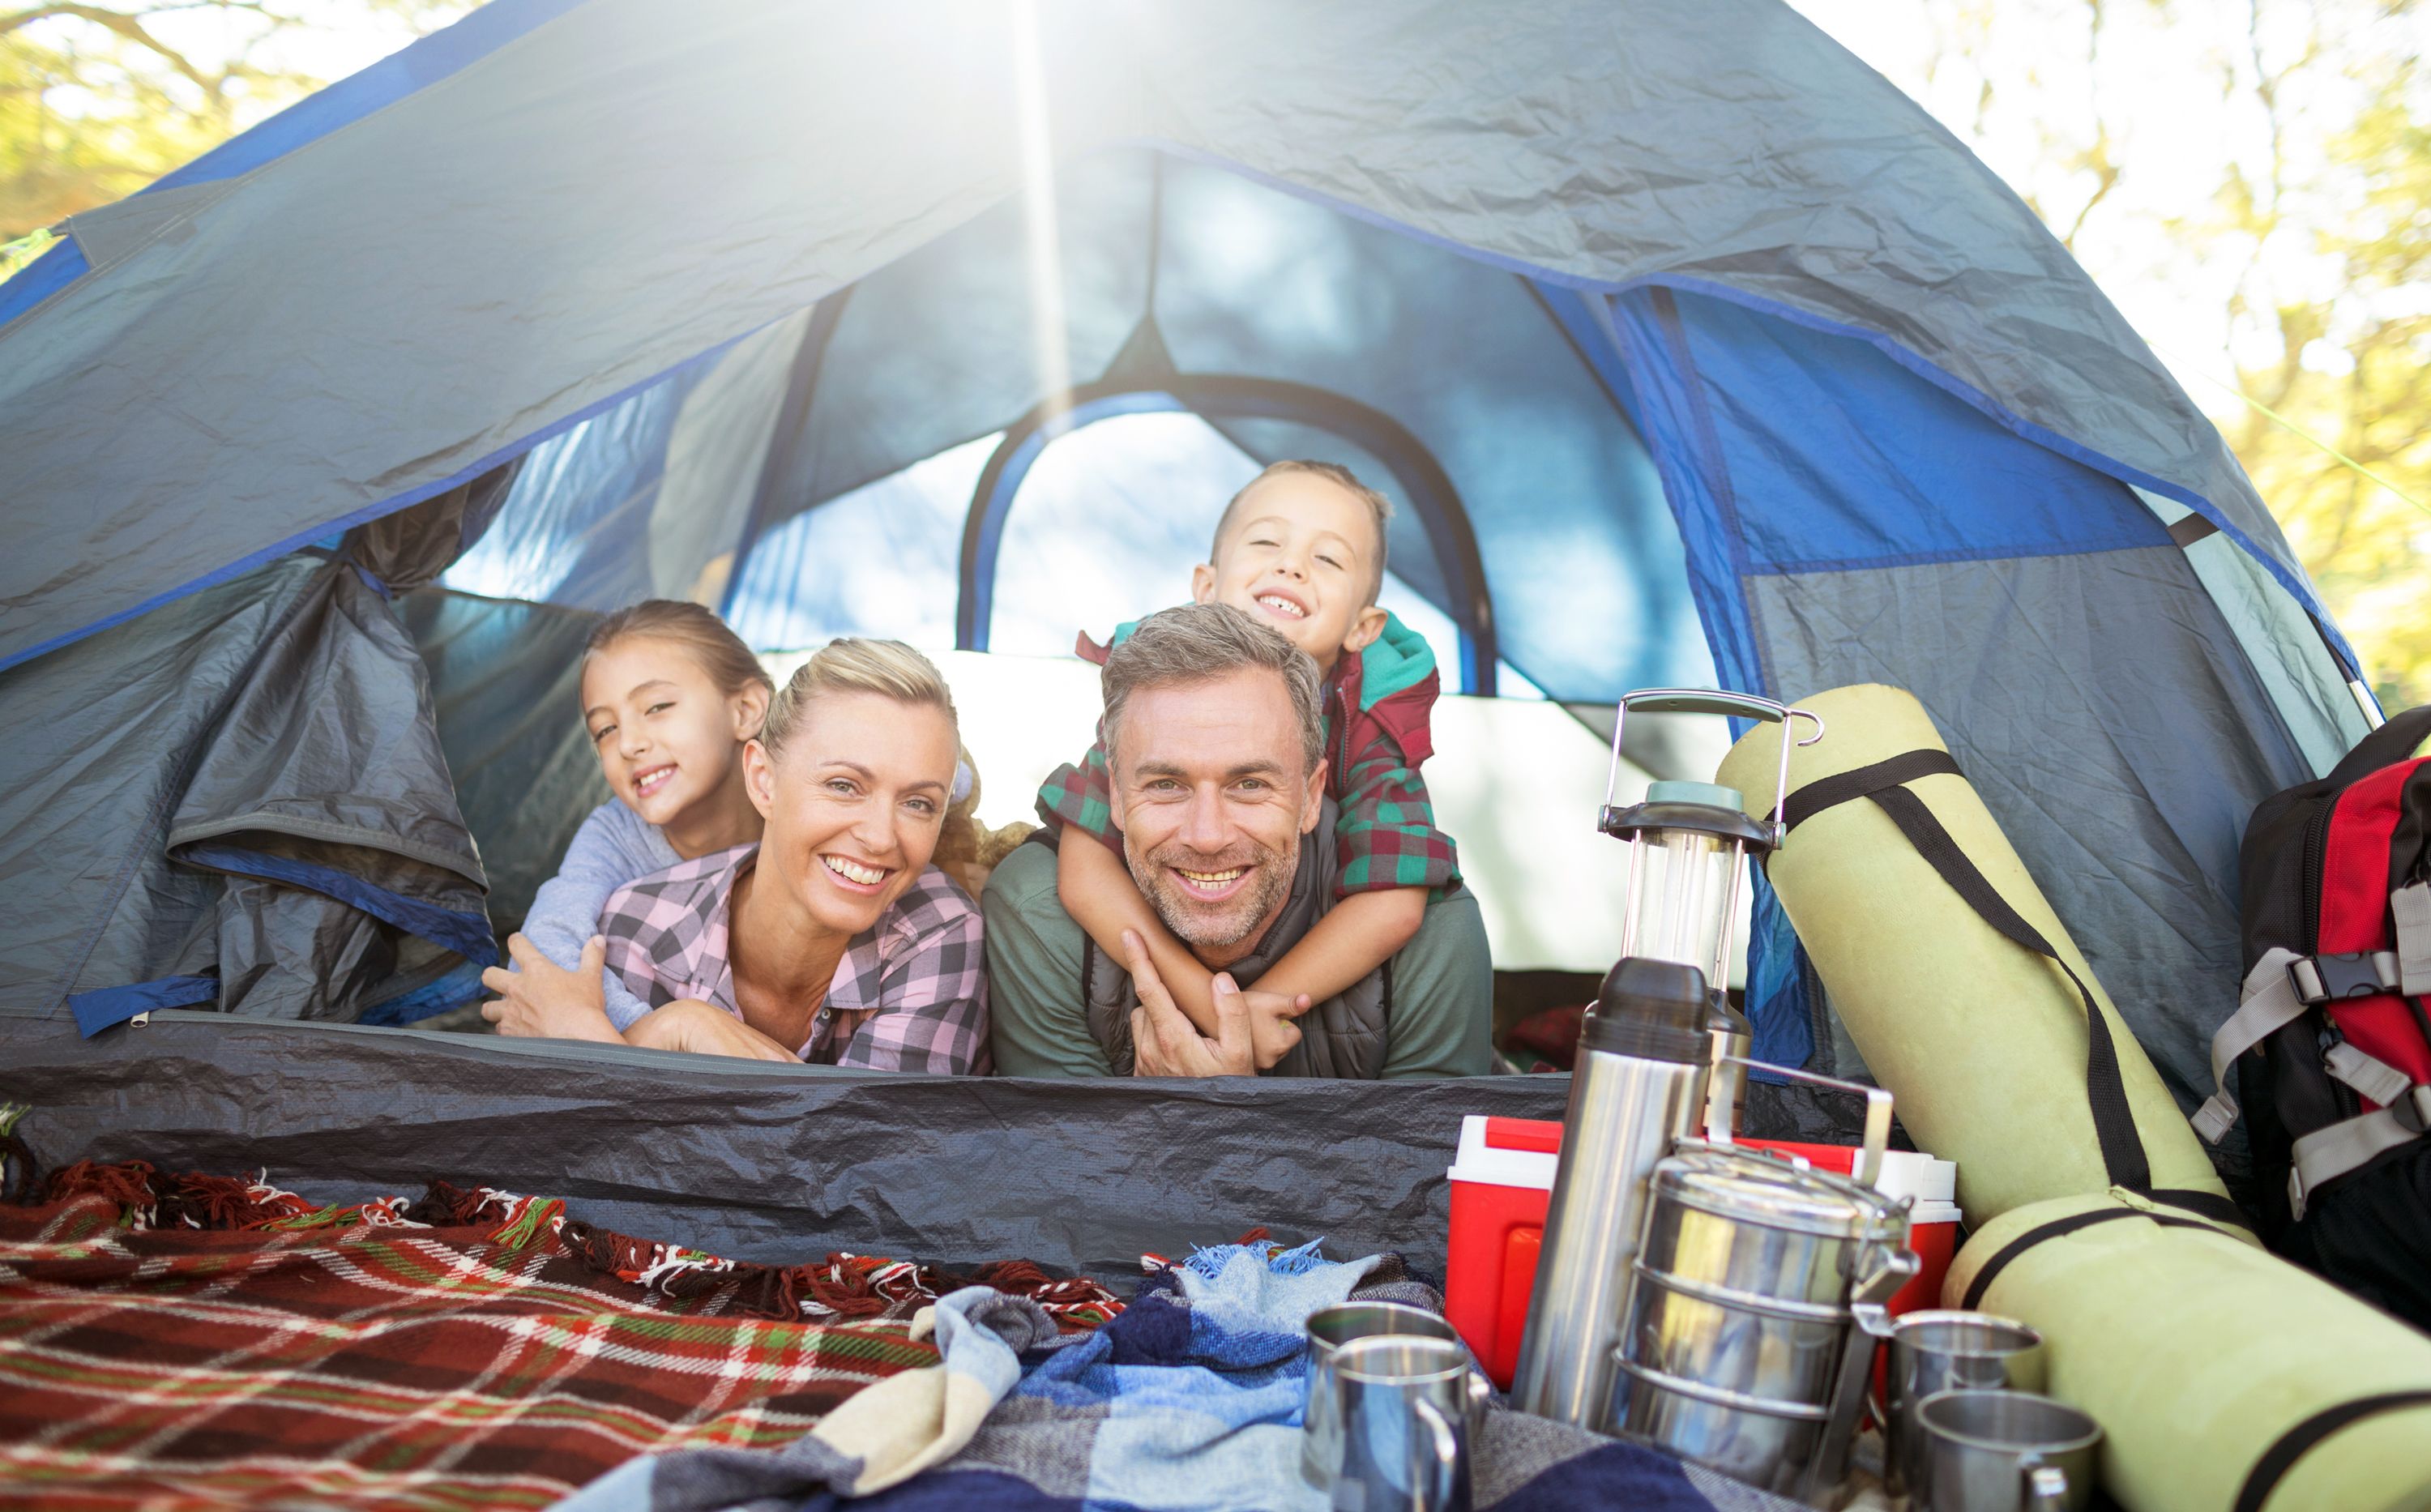 Familie liegt in einem Zelt mit allerlei Campingausrüstung und schaut gemeinsam lachend hinaus